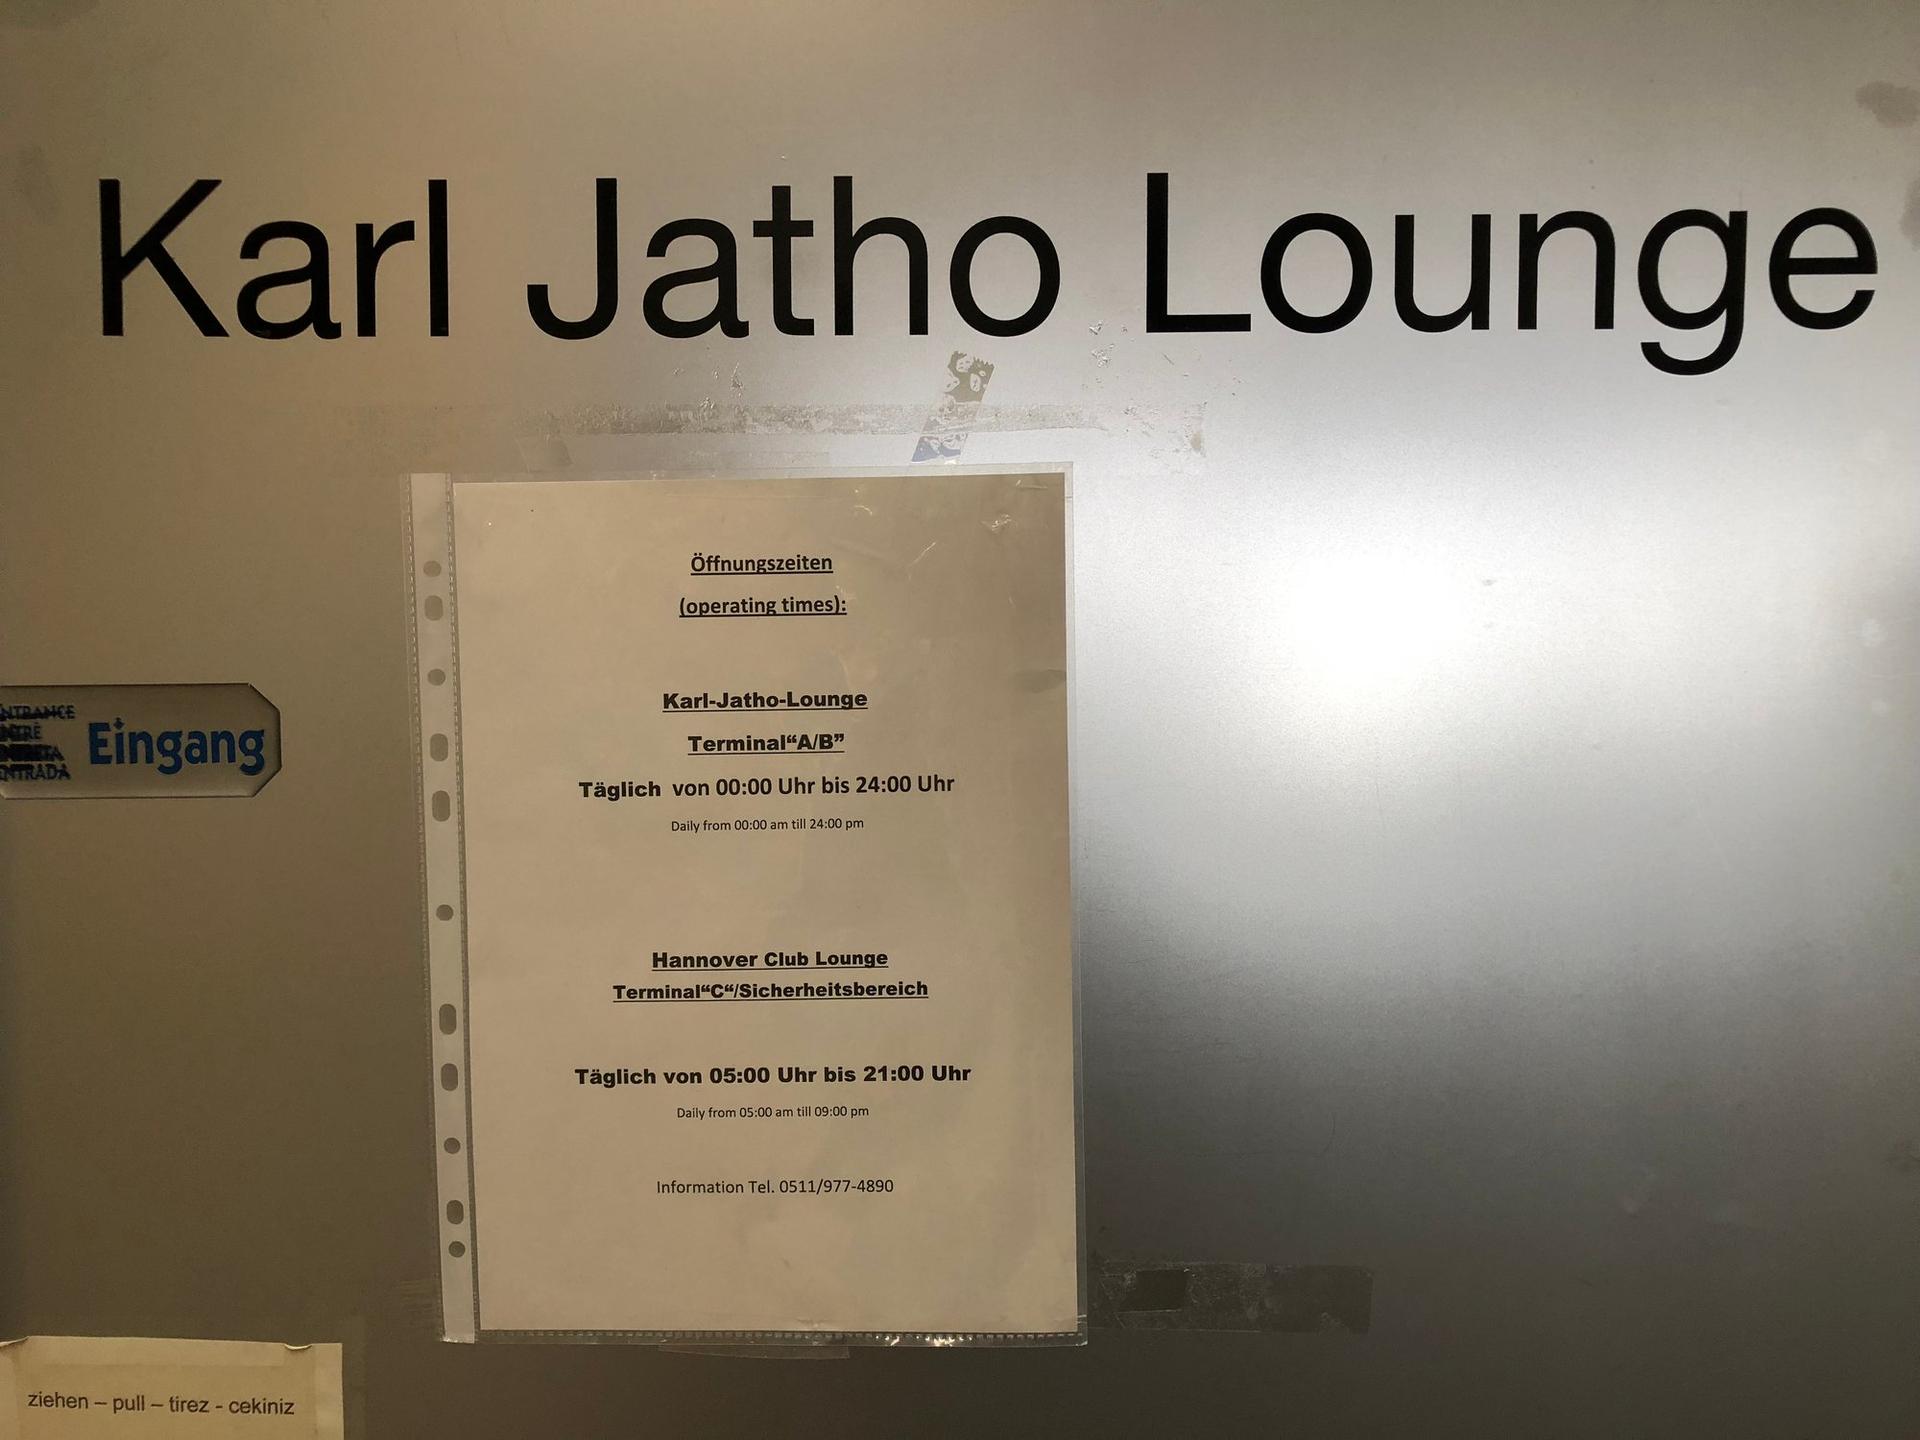 Karl-Jatho Lounge image 8 of 9